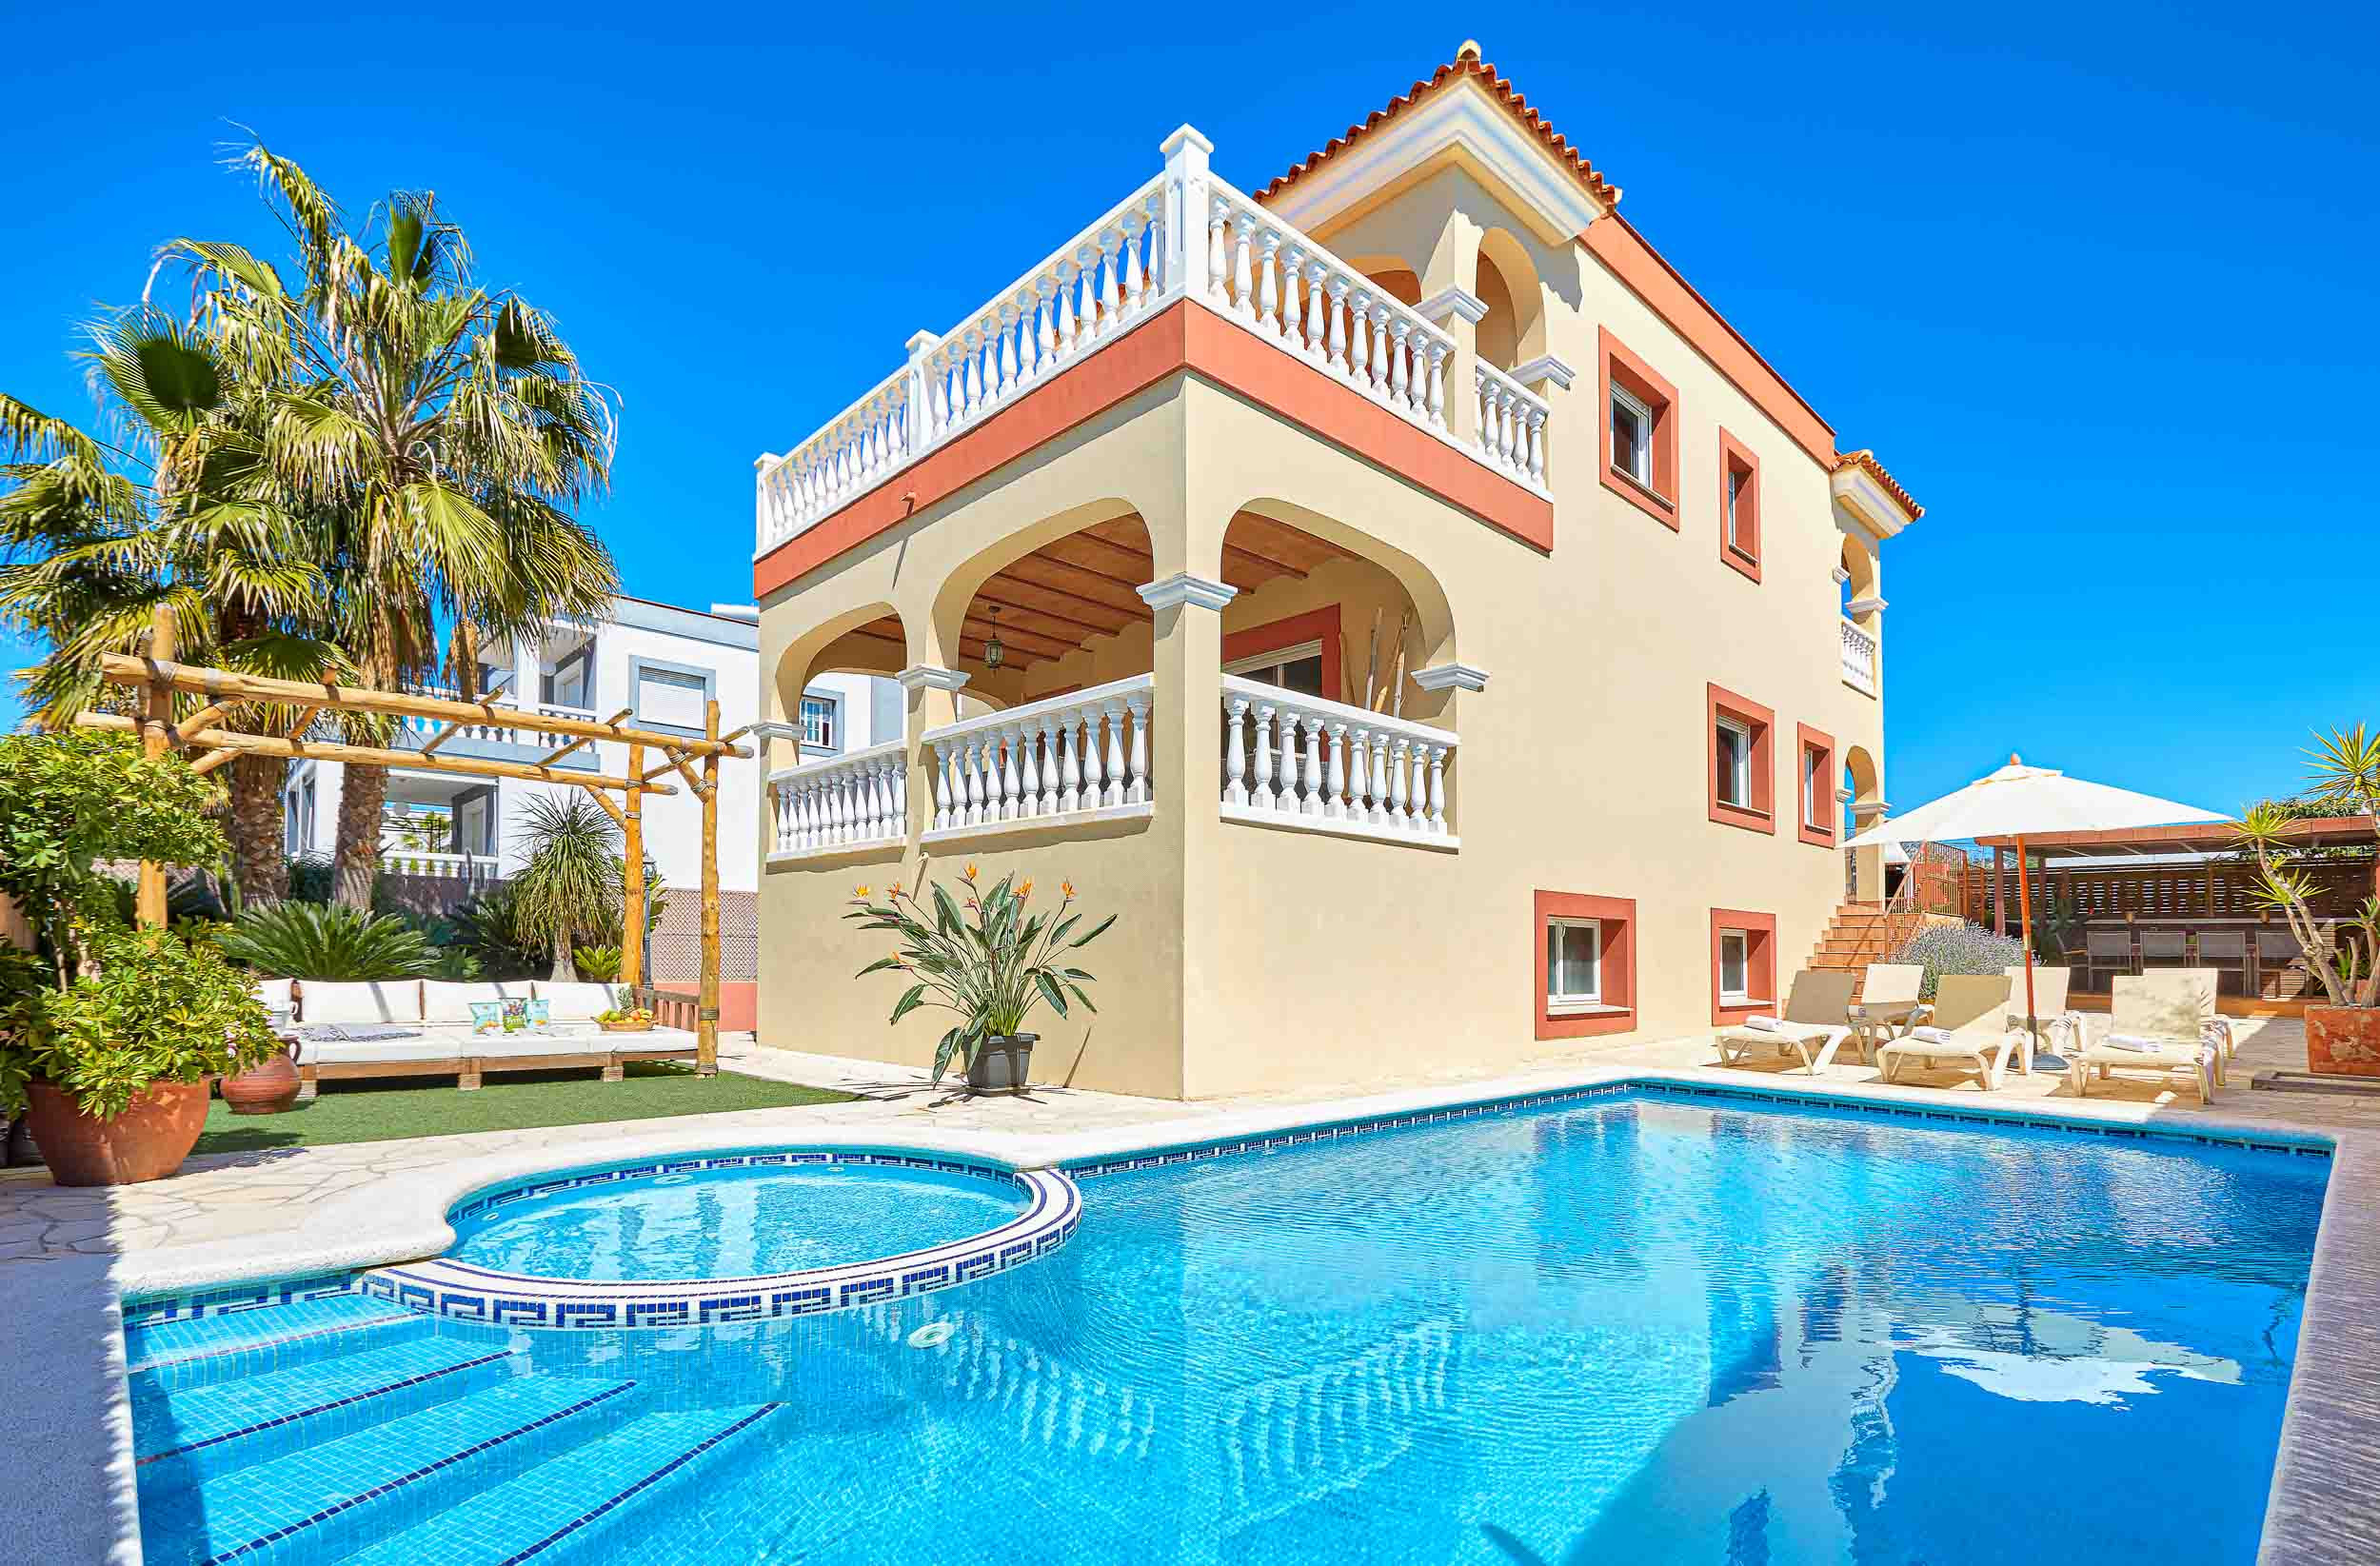 Spektakulärer Pool und Außenbereich der Villa Cane in Ibiza